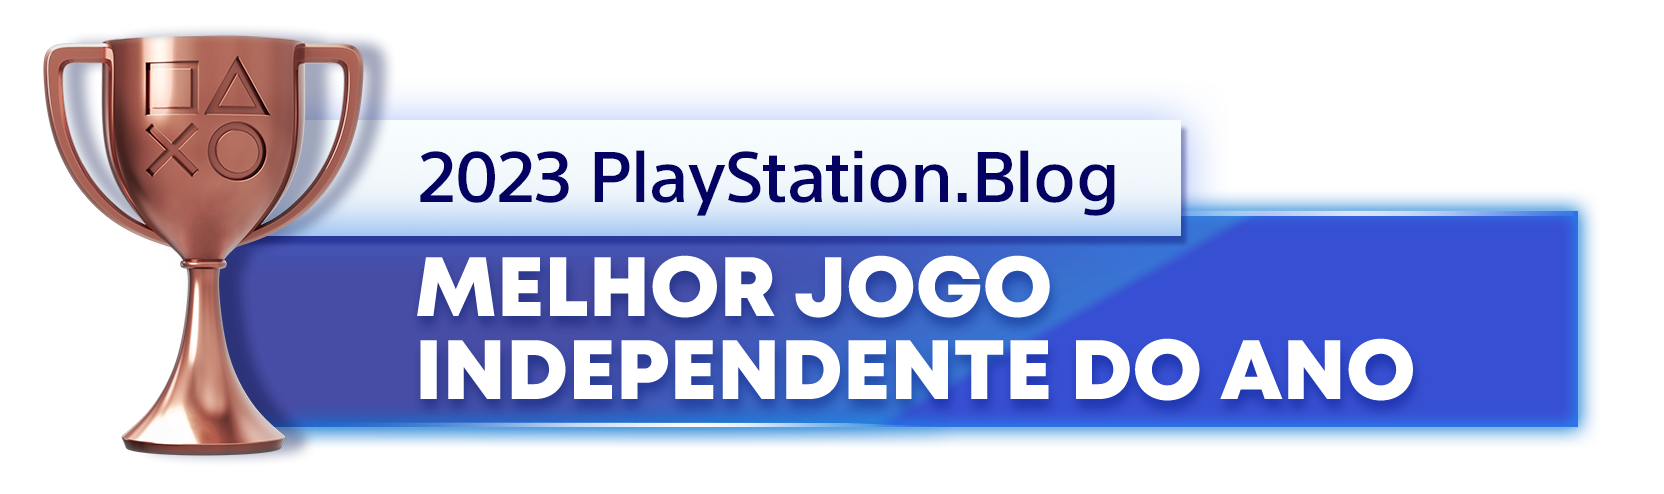  "Troféu de Bronze para o vencedor da categoria Melhor Jogo Independente do Ano de 2023 do PlayStation Blog"